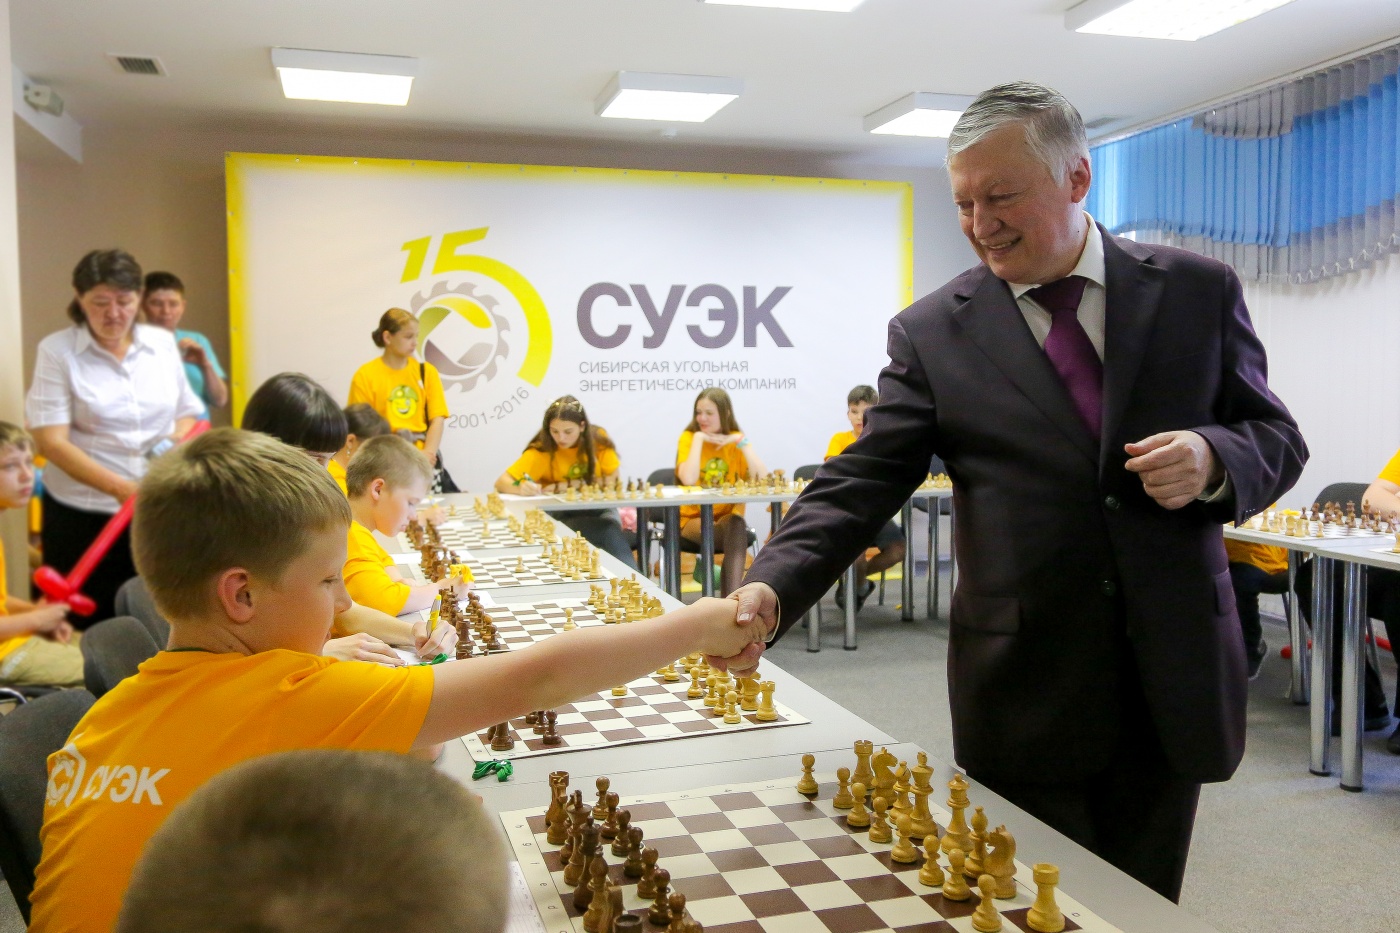 en medium krasnoyarsk suek s chess hopes interregional chess tournament with the world champion anatoly karpov regional development 